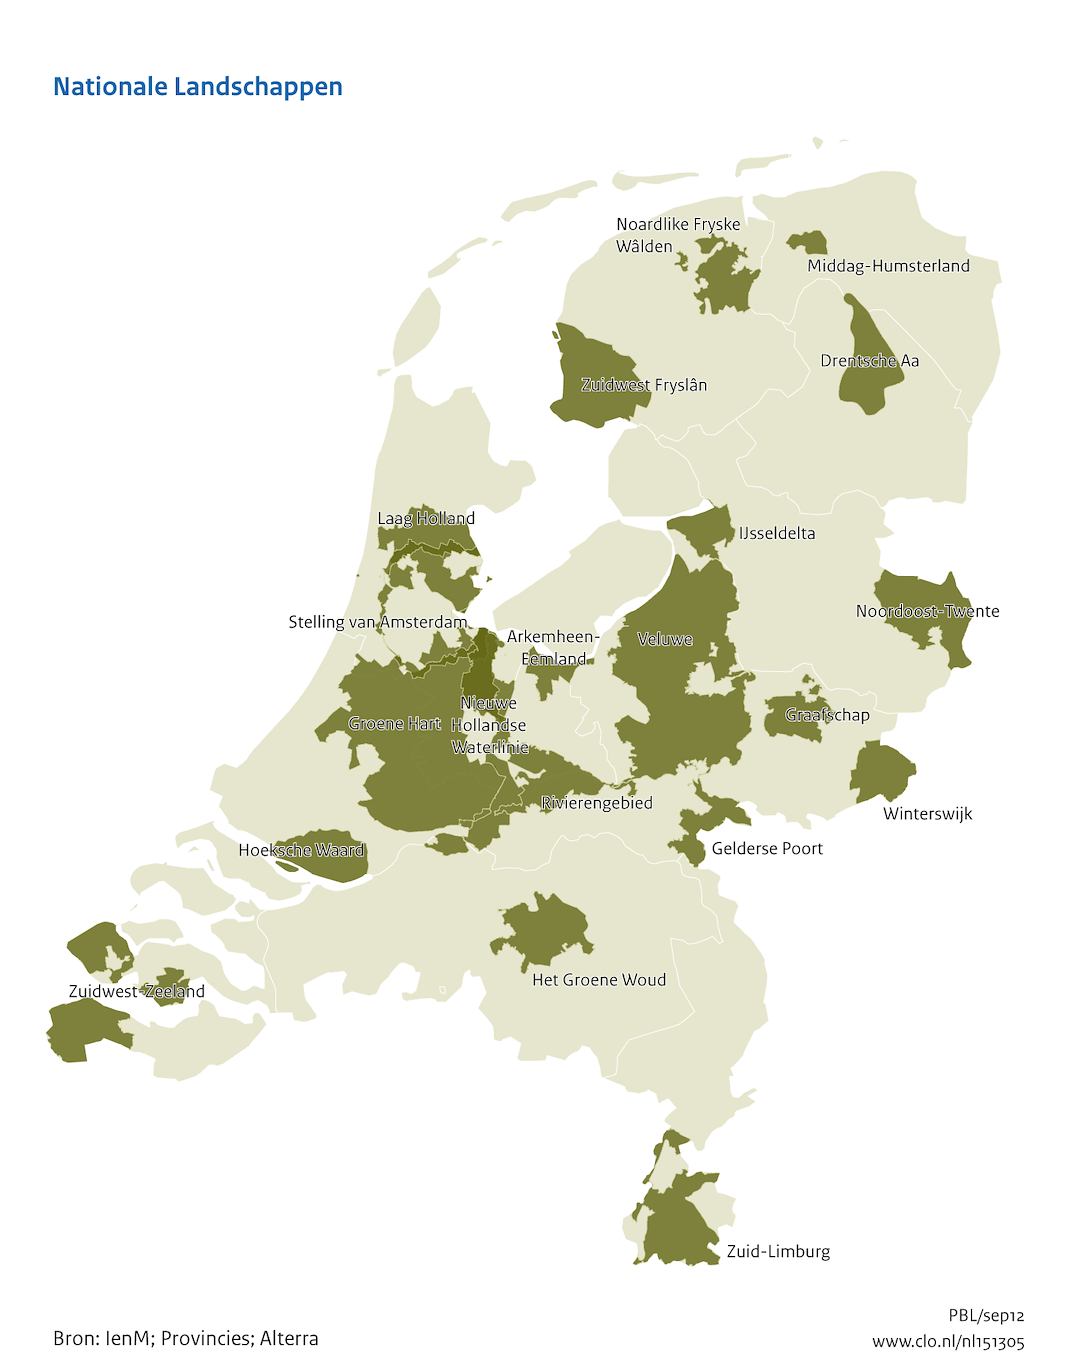 Overzicht van alle Nationale Landschappen in Nederland[8]